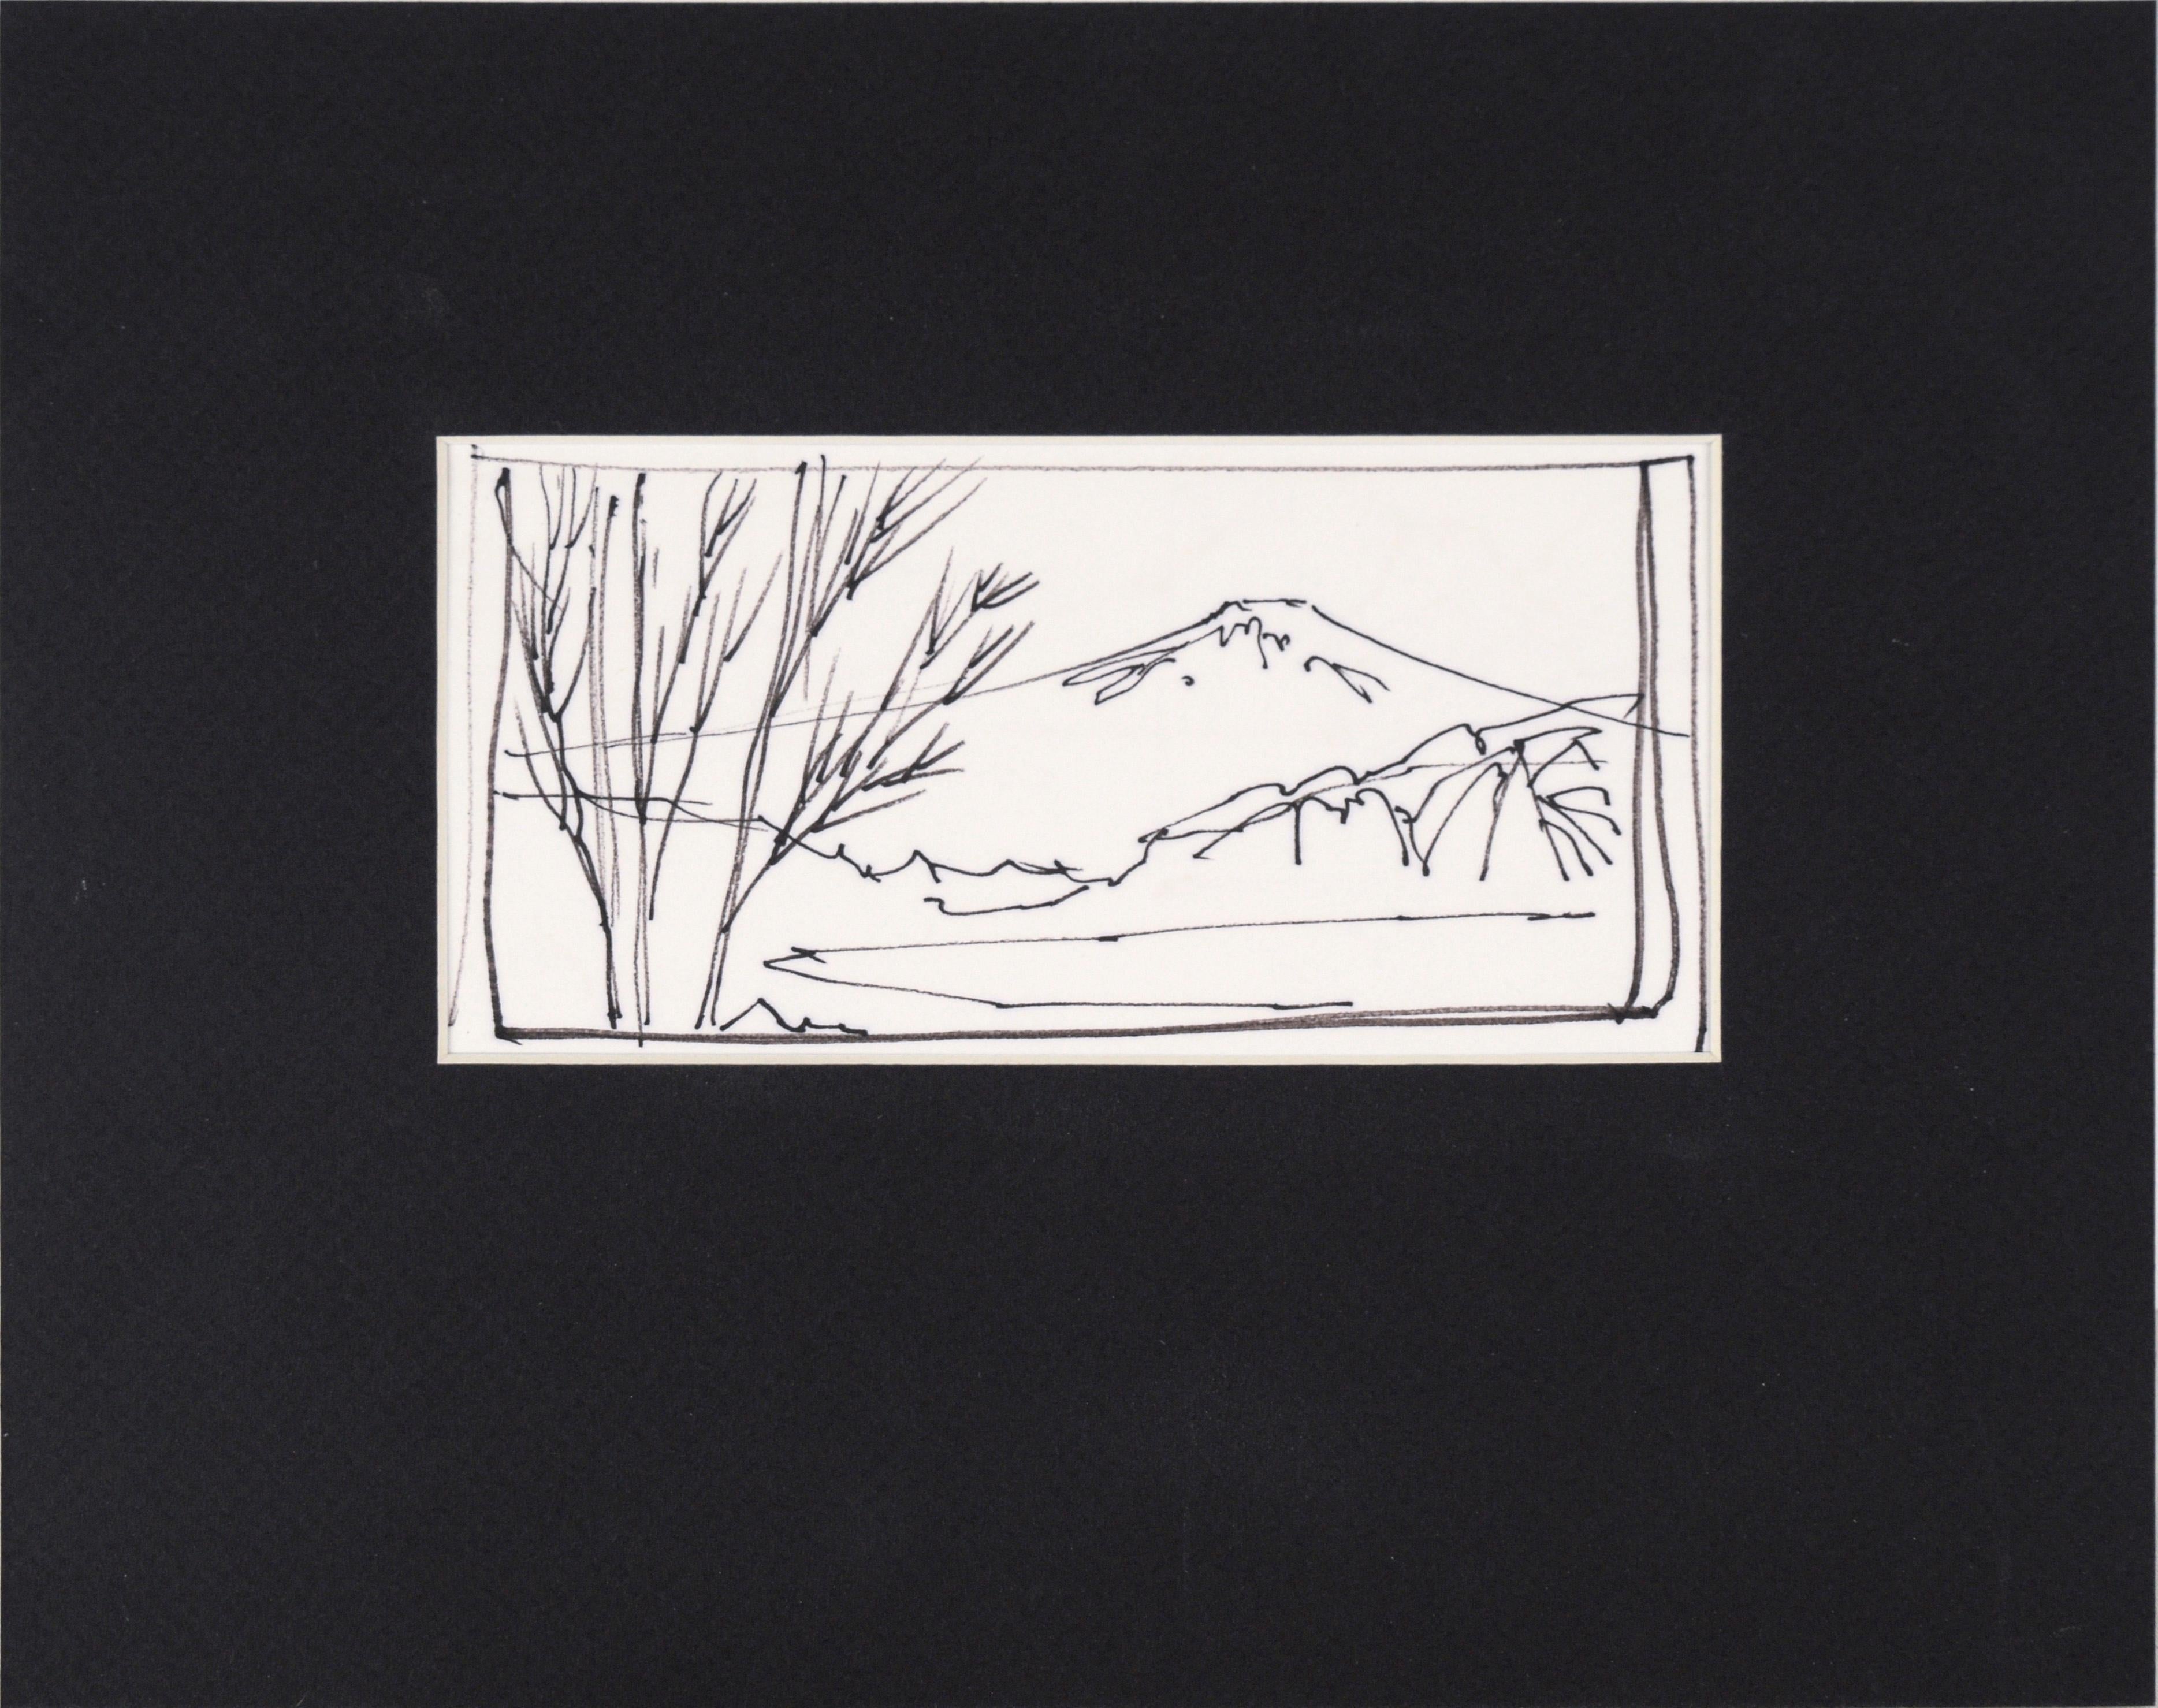 Snow-Capped Mountain Lake – Linienzeichnung einer Landschaft mit Tinte auf Papier